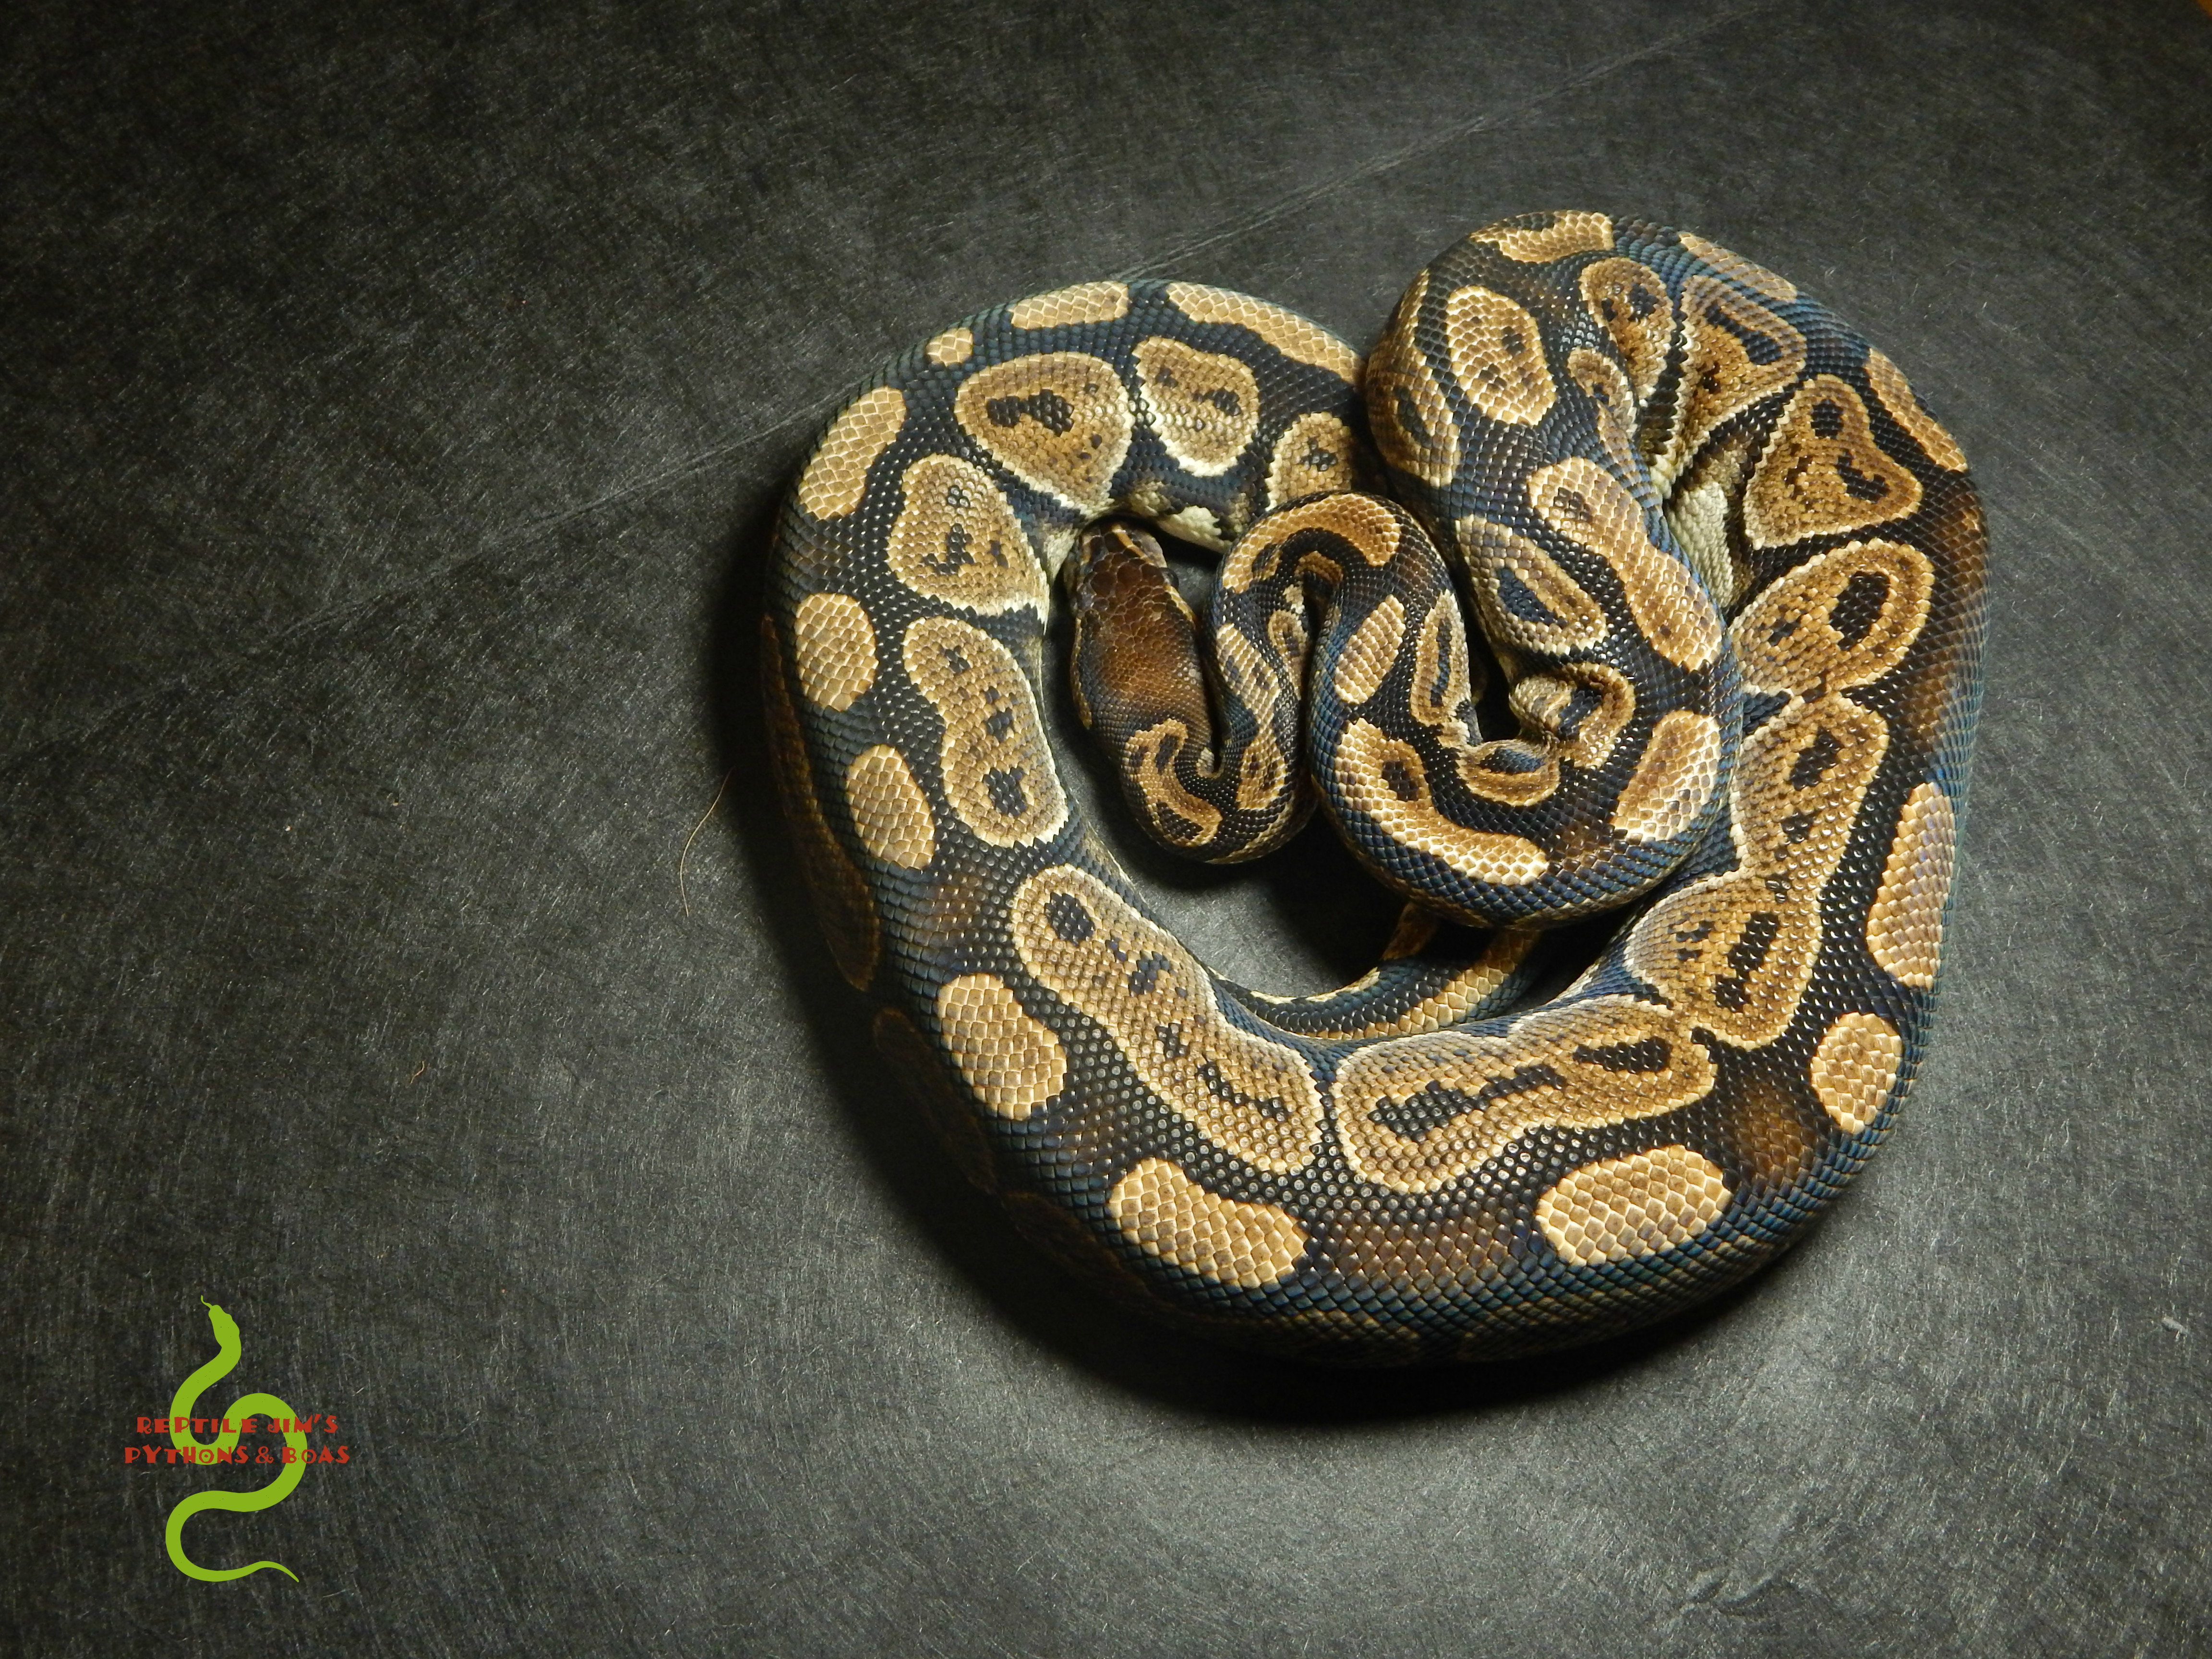 Huffman Ball Python by Reptile Jim's